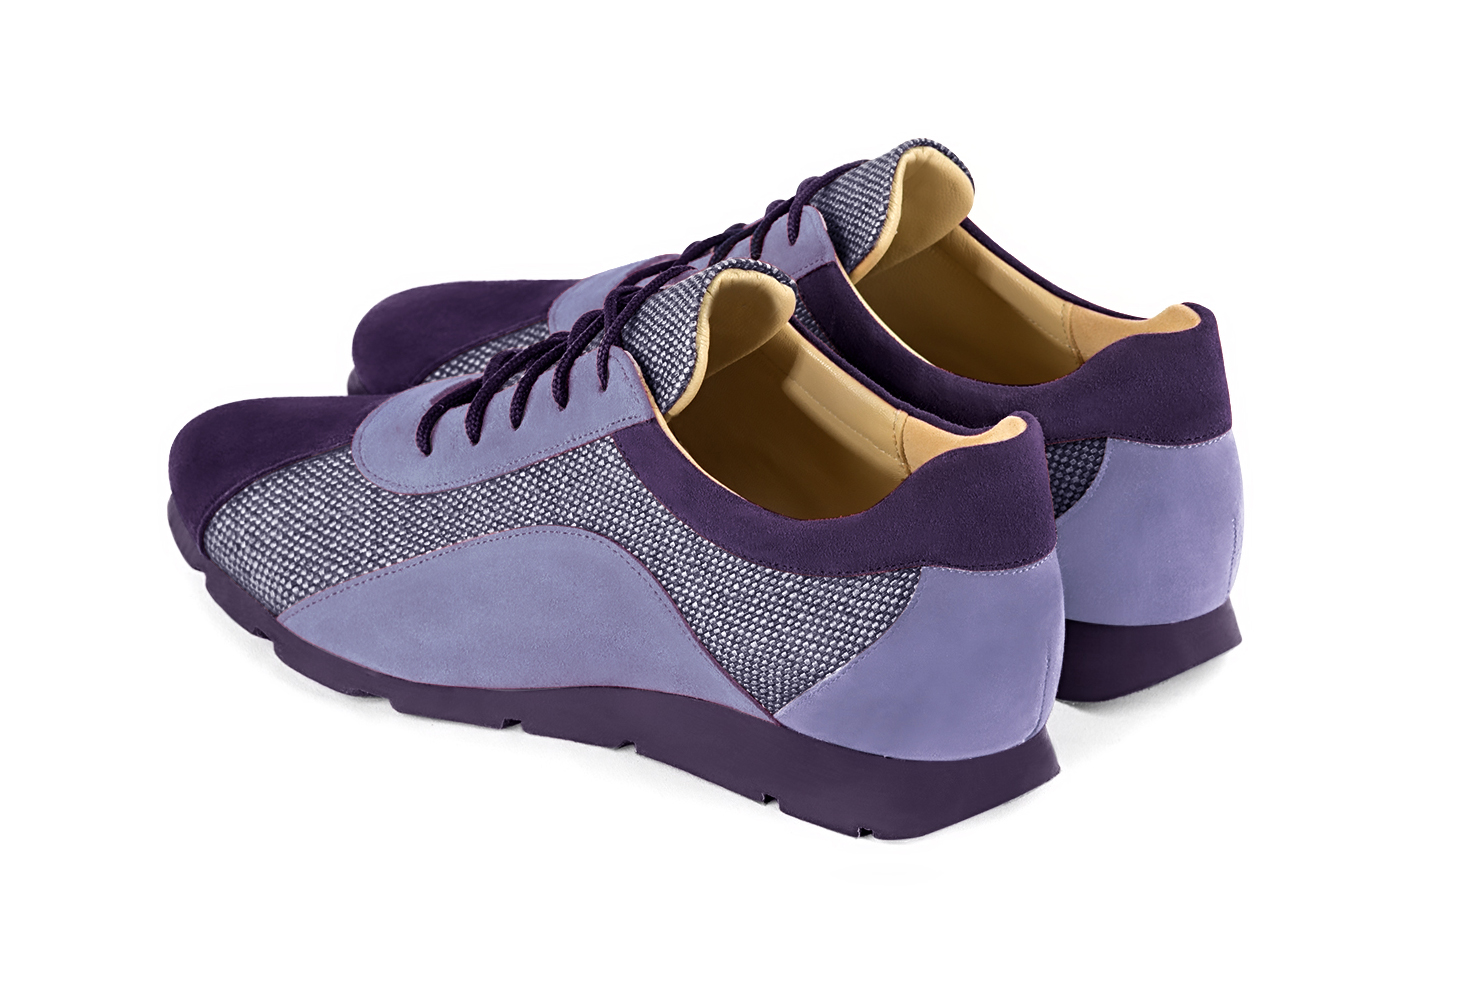 Basket femme habillée : Sneaker urbain bicolore couleur violet lavande. Semelle fine. Doublure cuir. Vue arrière - Florence KOOIJMAN